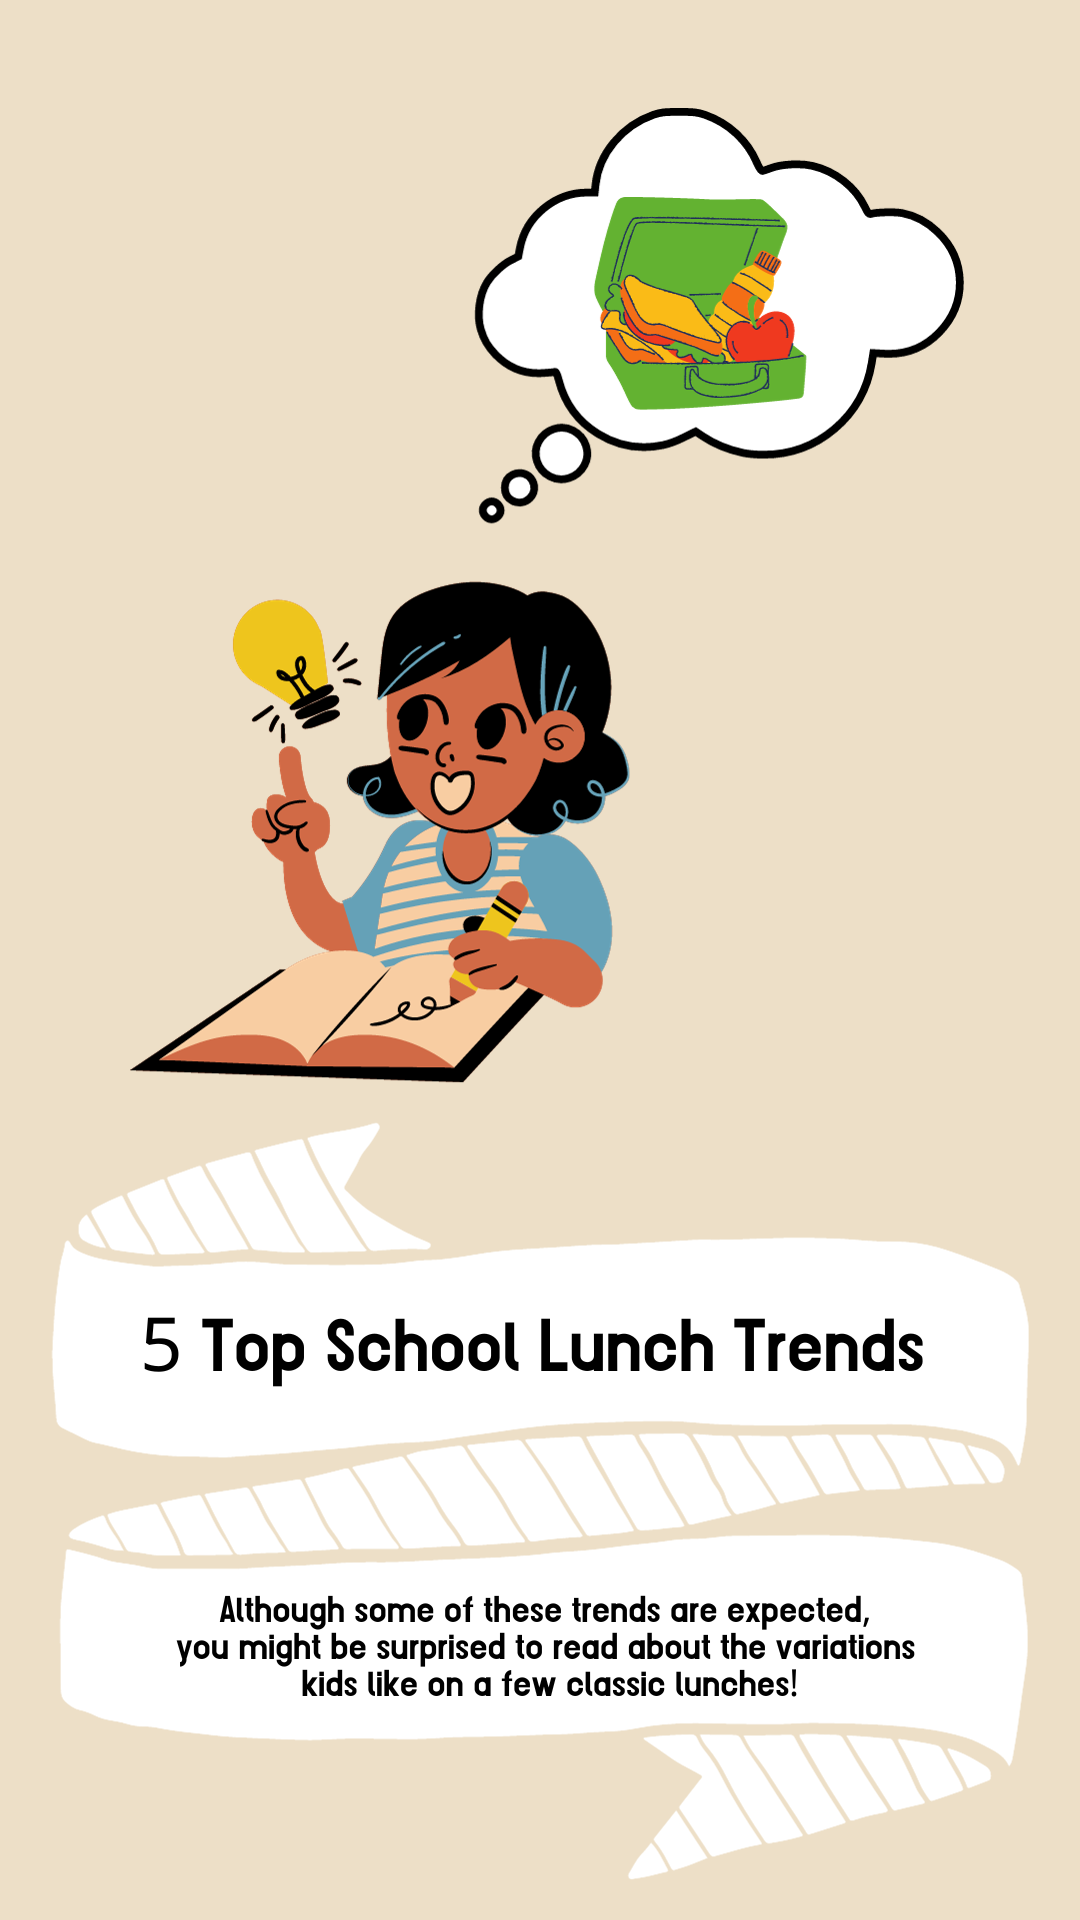 Image: 5 Top School Lunch Trends.